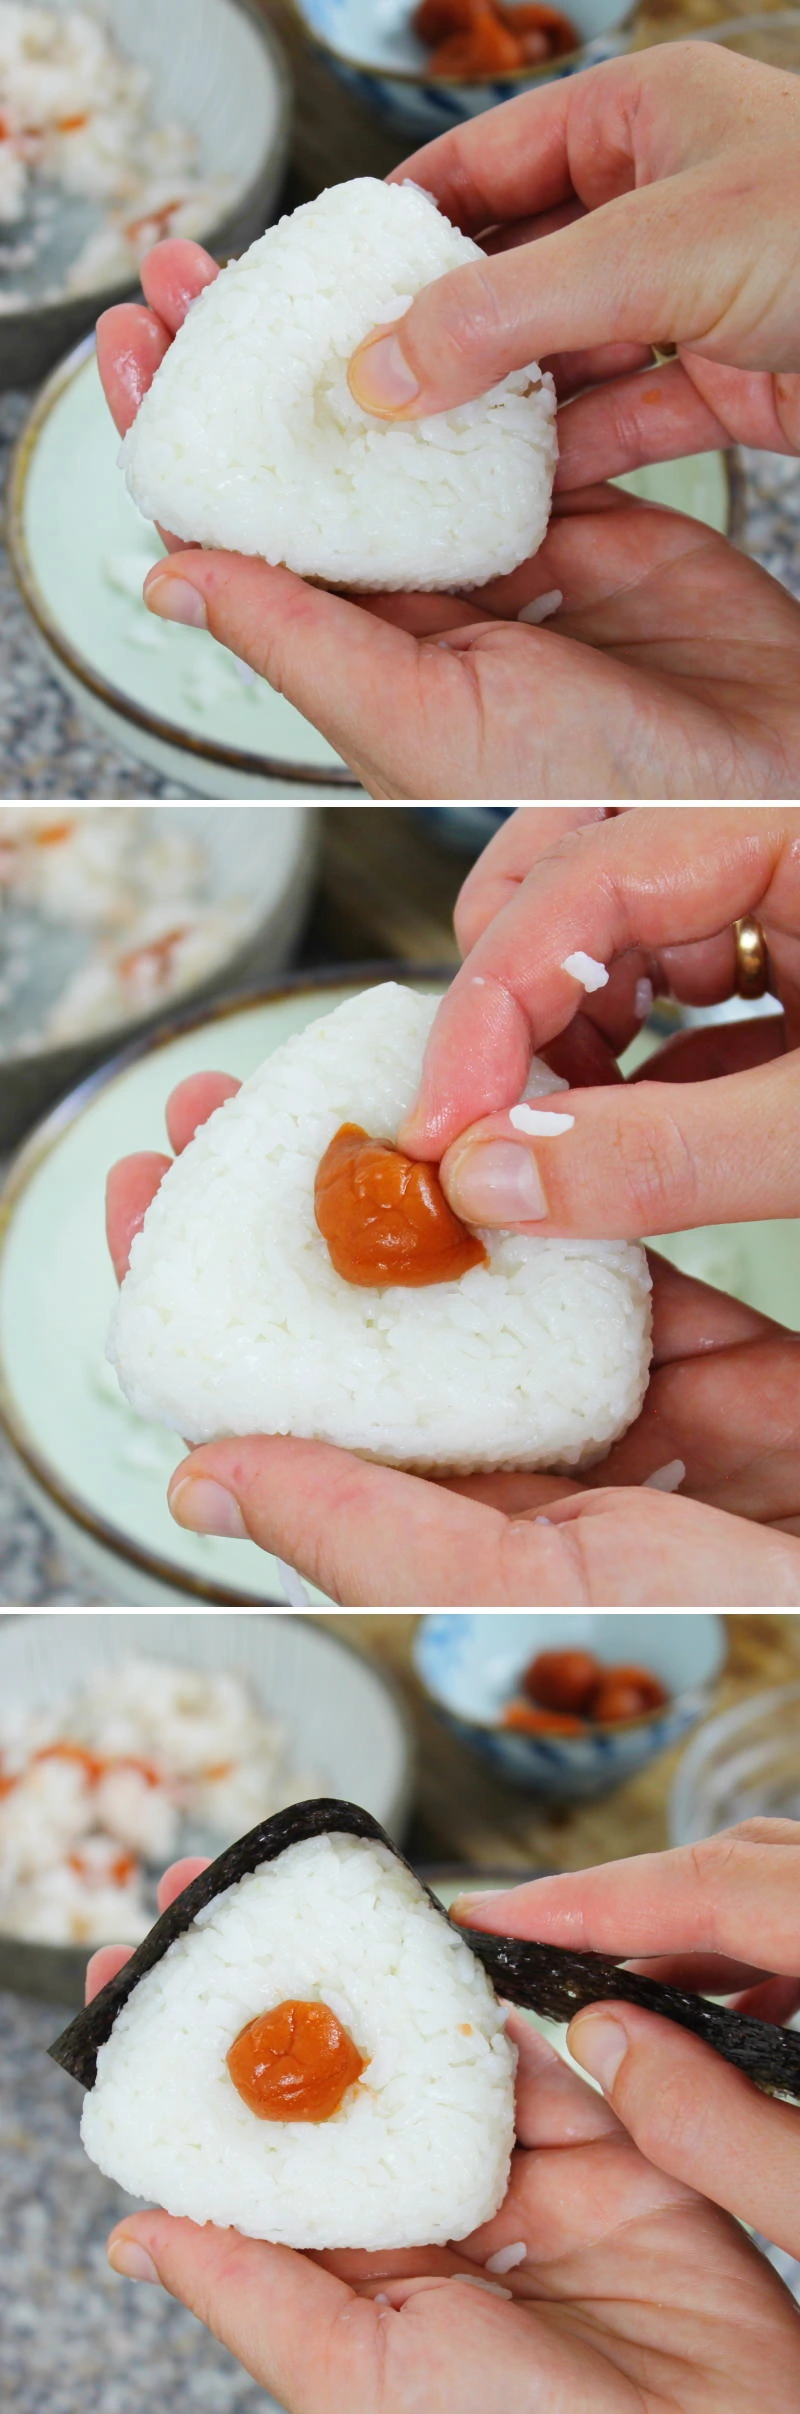 Onigiri mit Ume Schritt 4 Reis füllen und mit Nori umwickeln